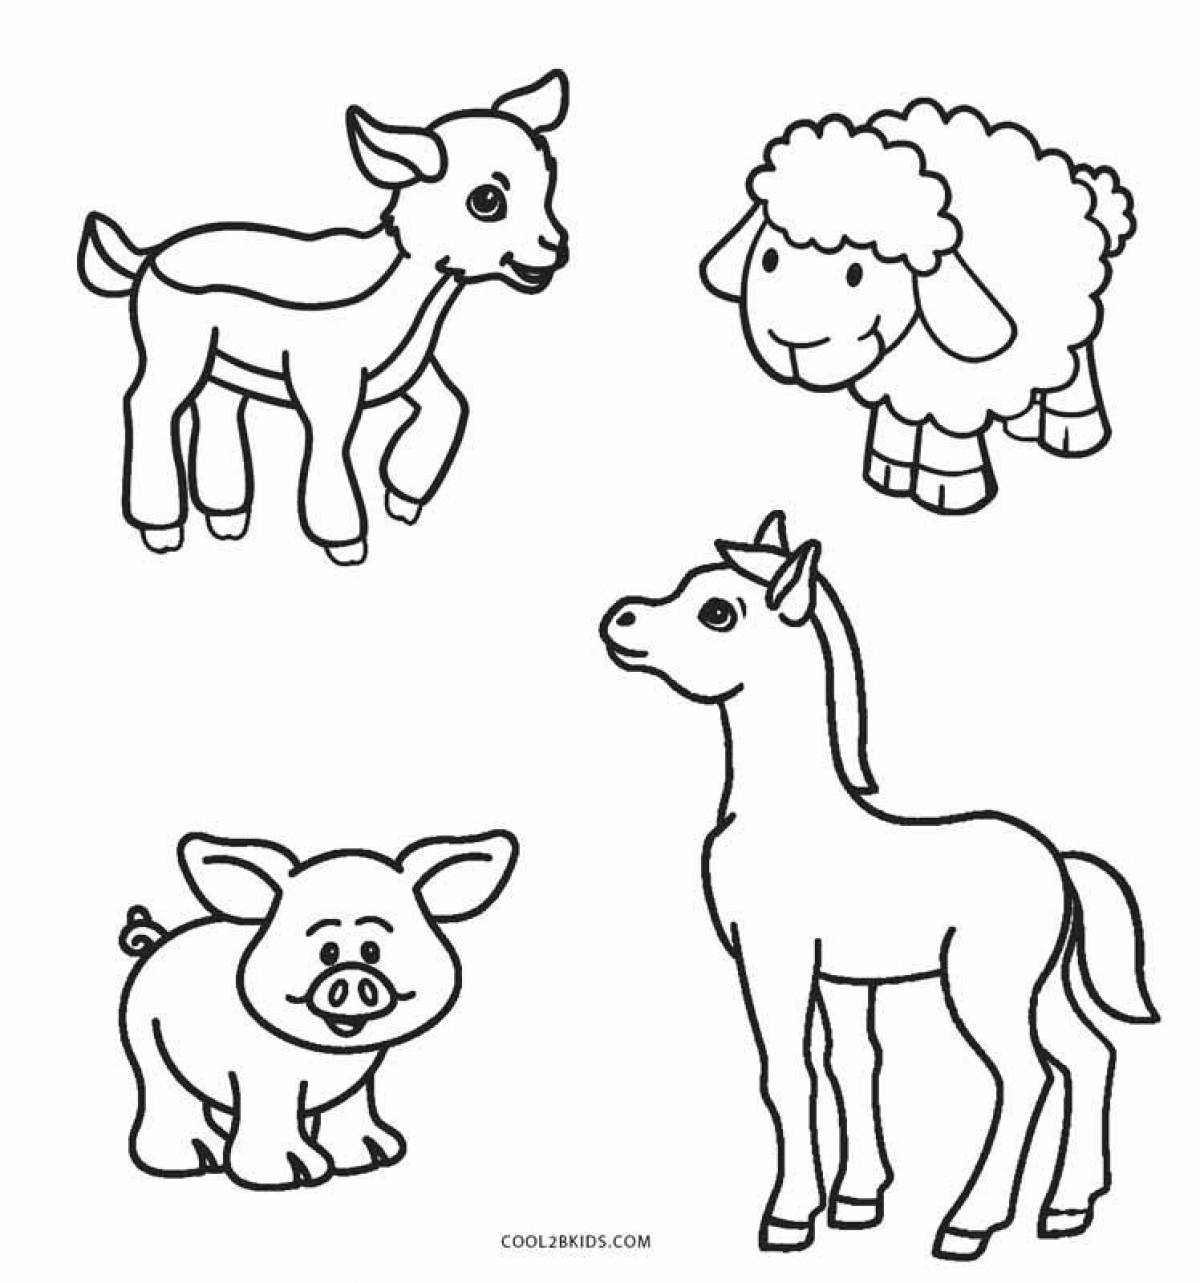 Фото Веселые раскраски животных для детей 3-4 лет